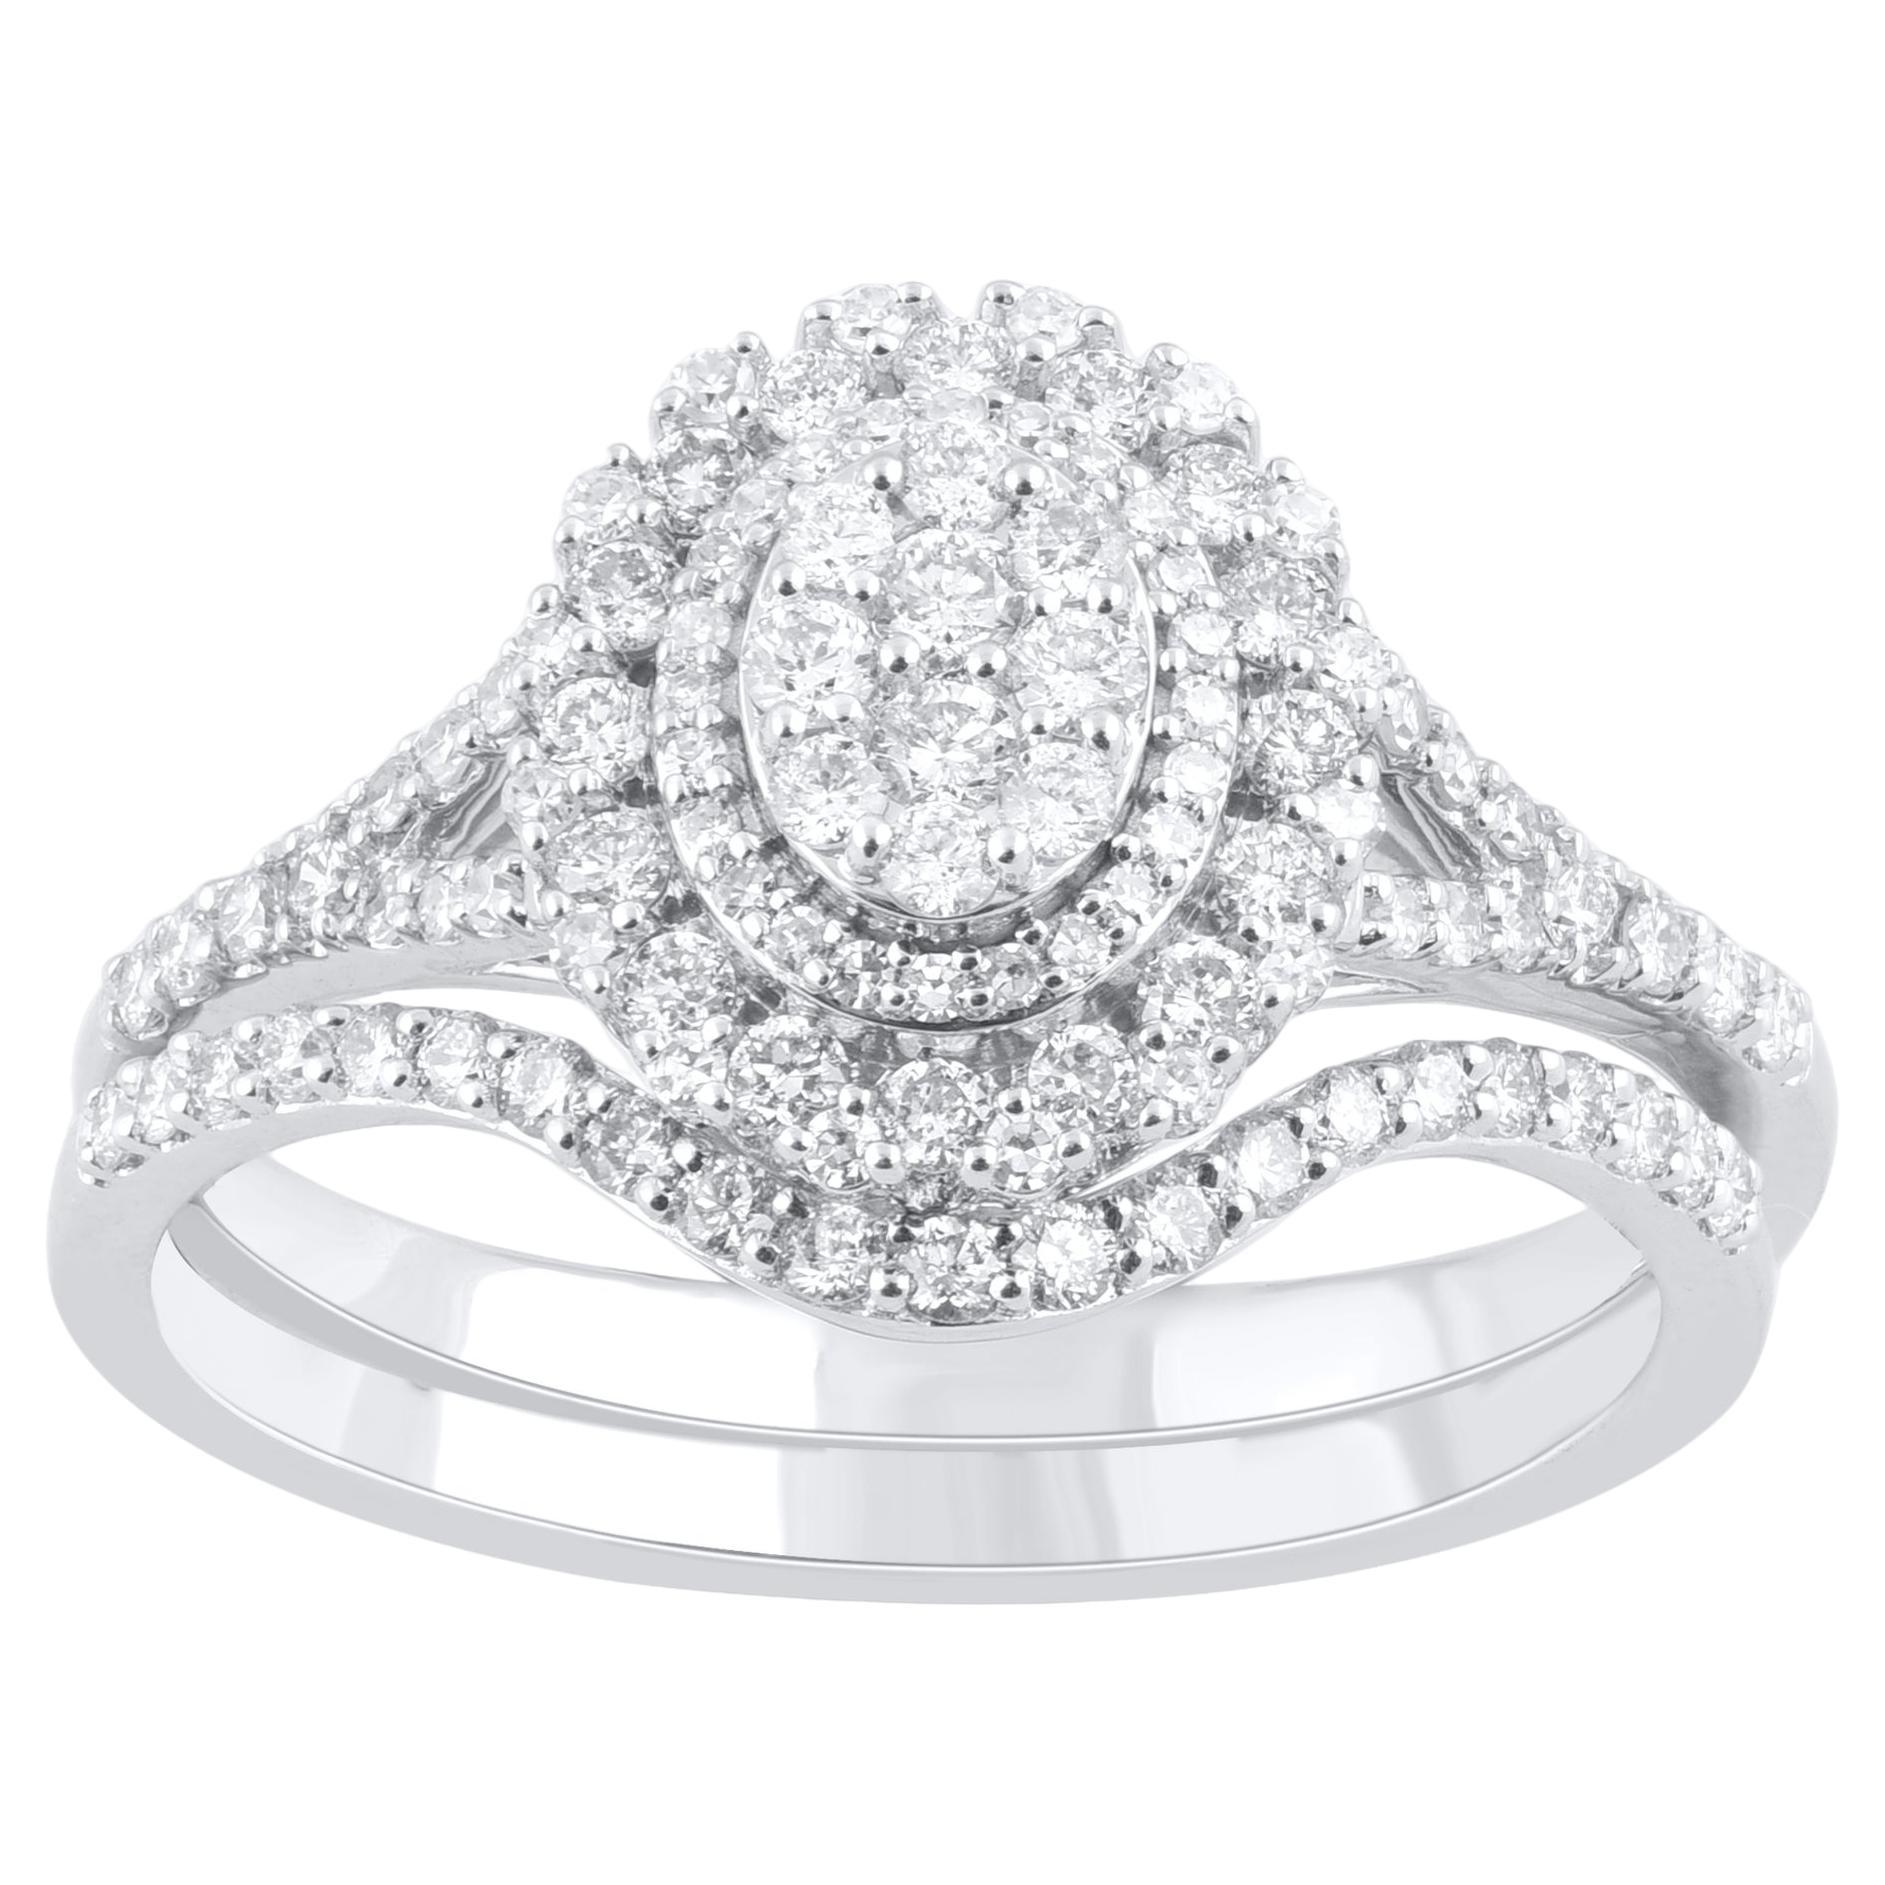 TJD 0.65 Carat Natural Round Cut Diamond 14 Karat White Gold Bridal Ring Set